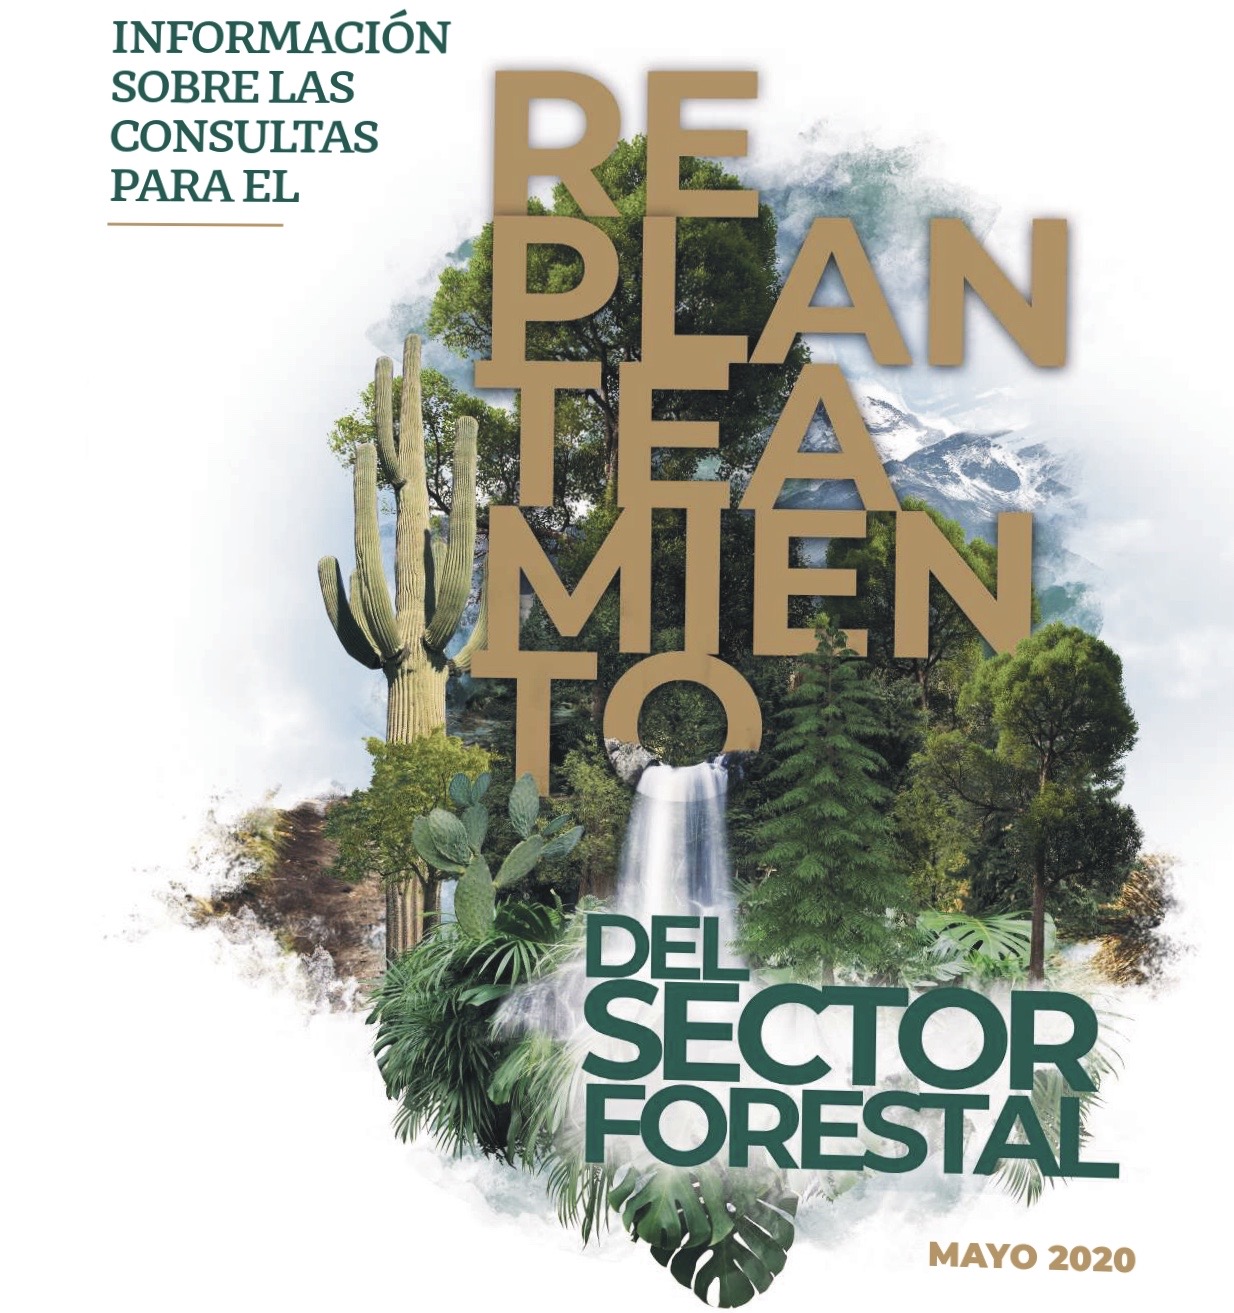 Tríptico información sobre las consultas para el replanteamiento del sector forestal